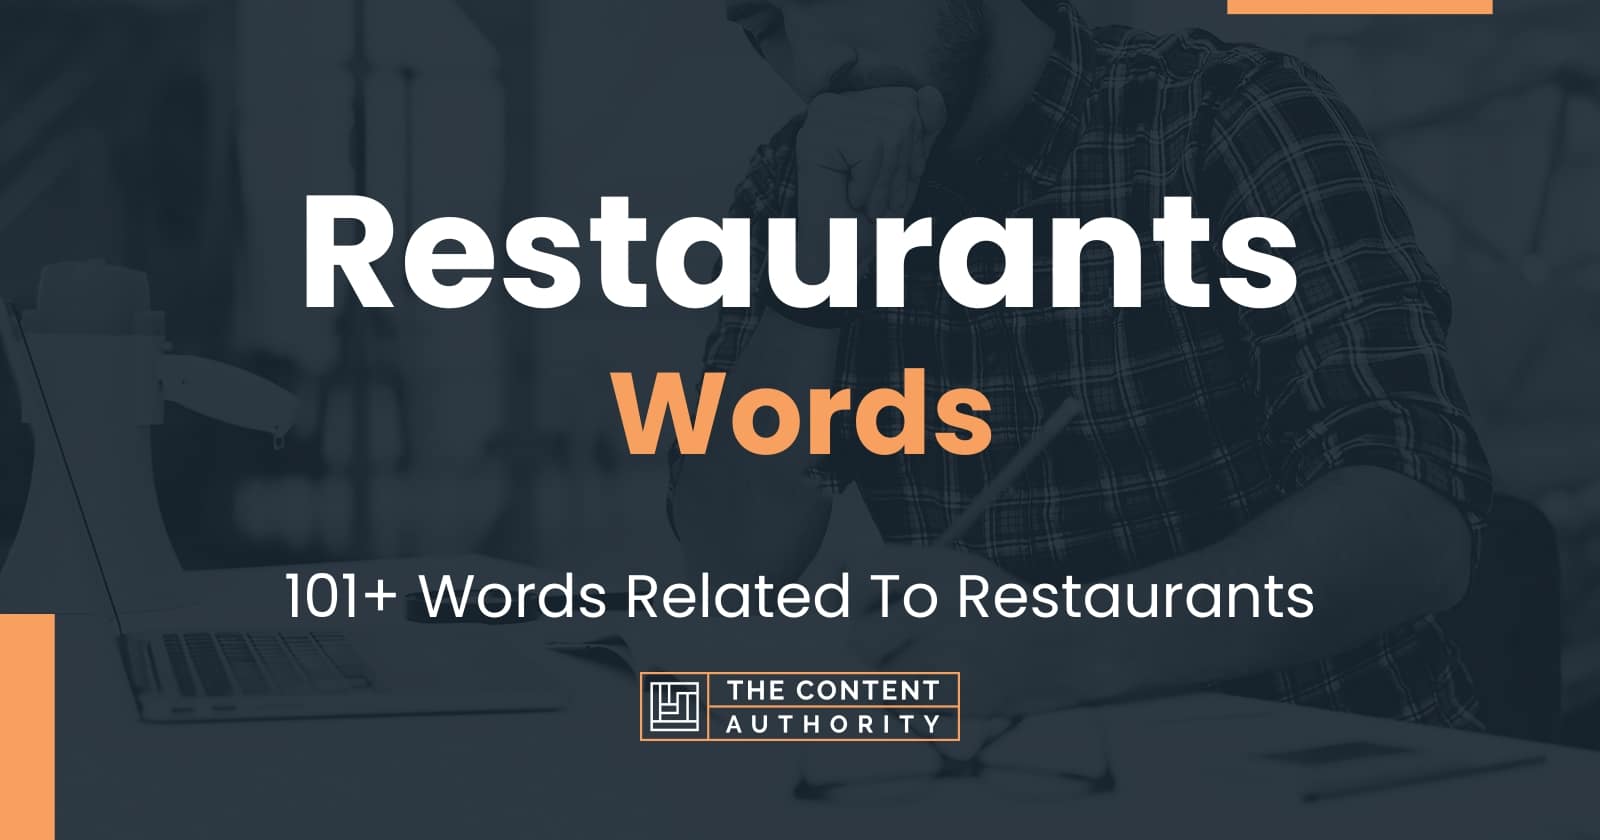 Restaurants Words - 101+ Words Related To Restaurants